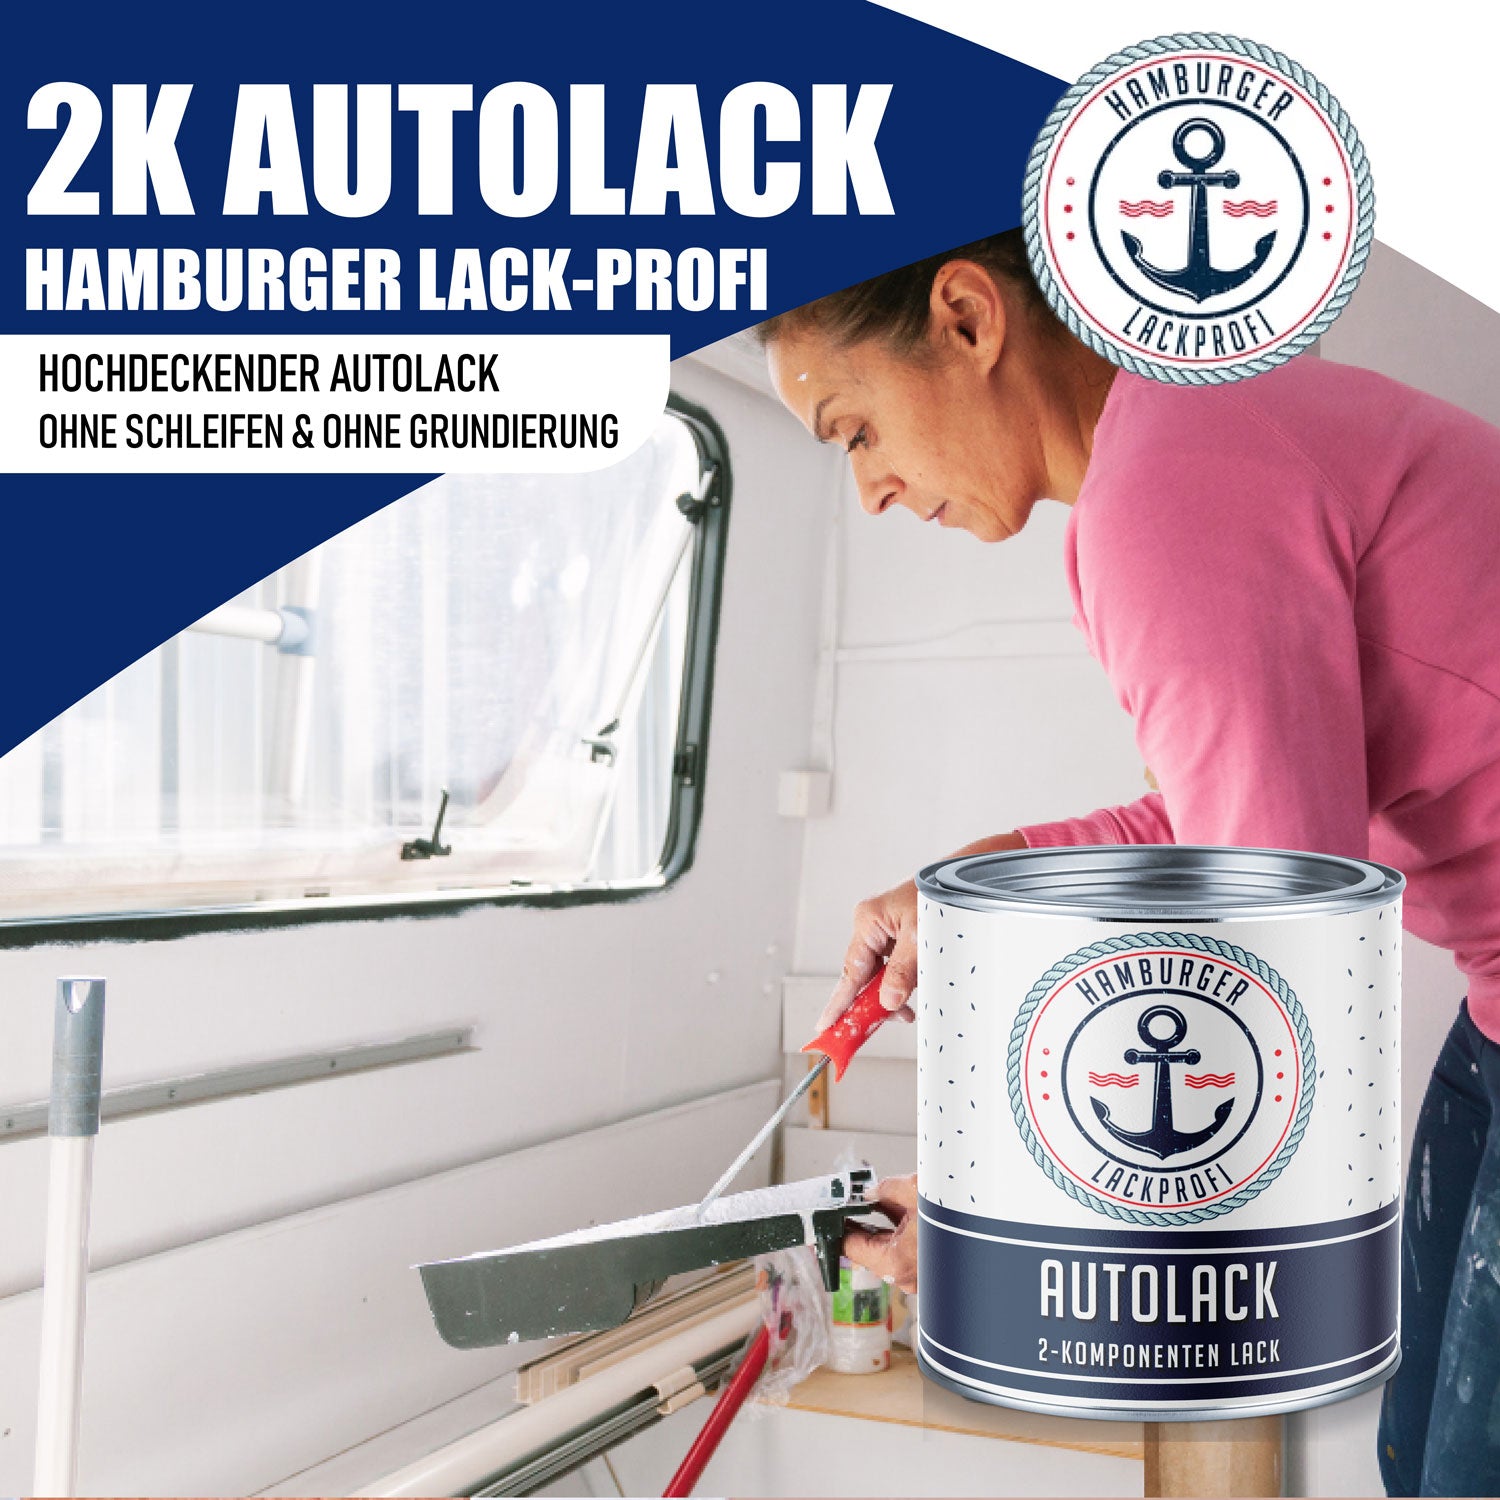 Hamburger Lack-Profi 2K Autolack in Gelborange RAL 2000 mit Lackierset (X300) & Verdünnung (1 L) - 30% Sparangebot